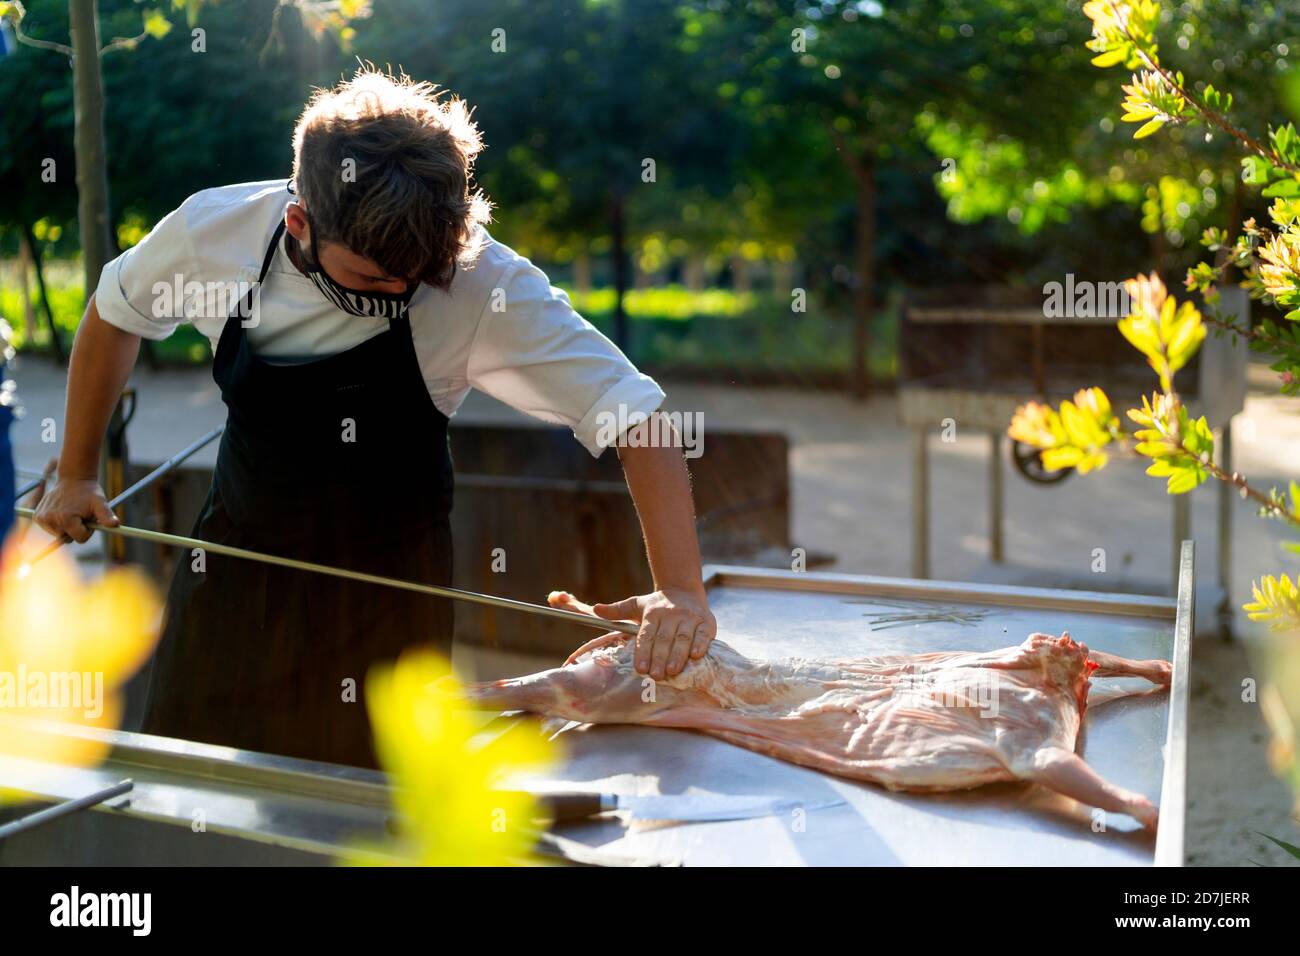 Chef masculin portant un masque coupant de la viande de chèvre sur la table pendant debout dans un verger Banque D'Images